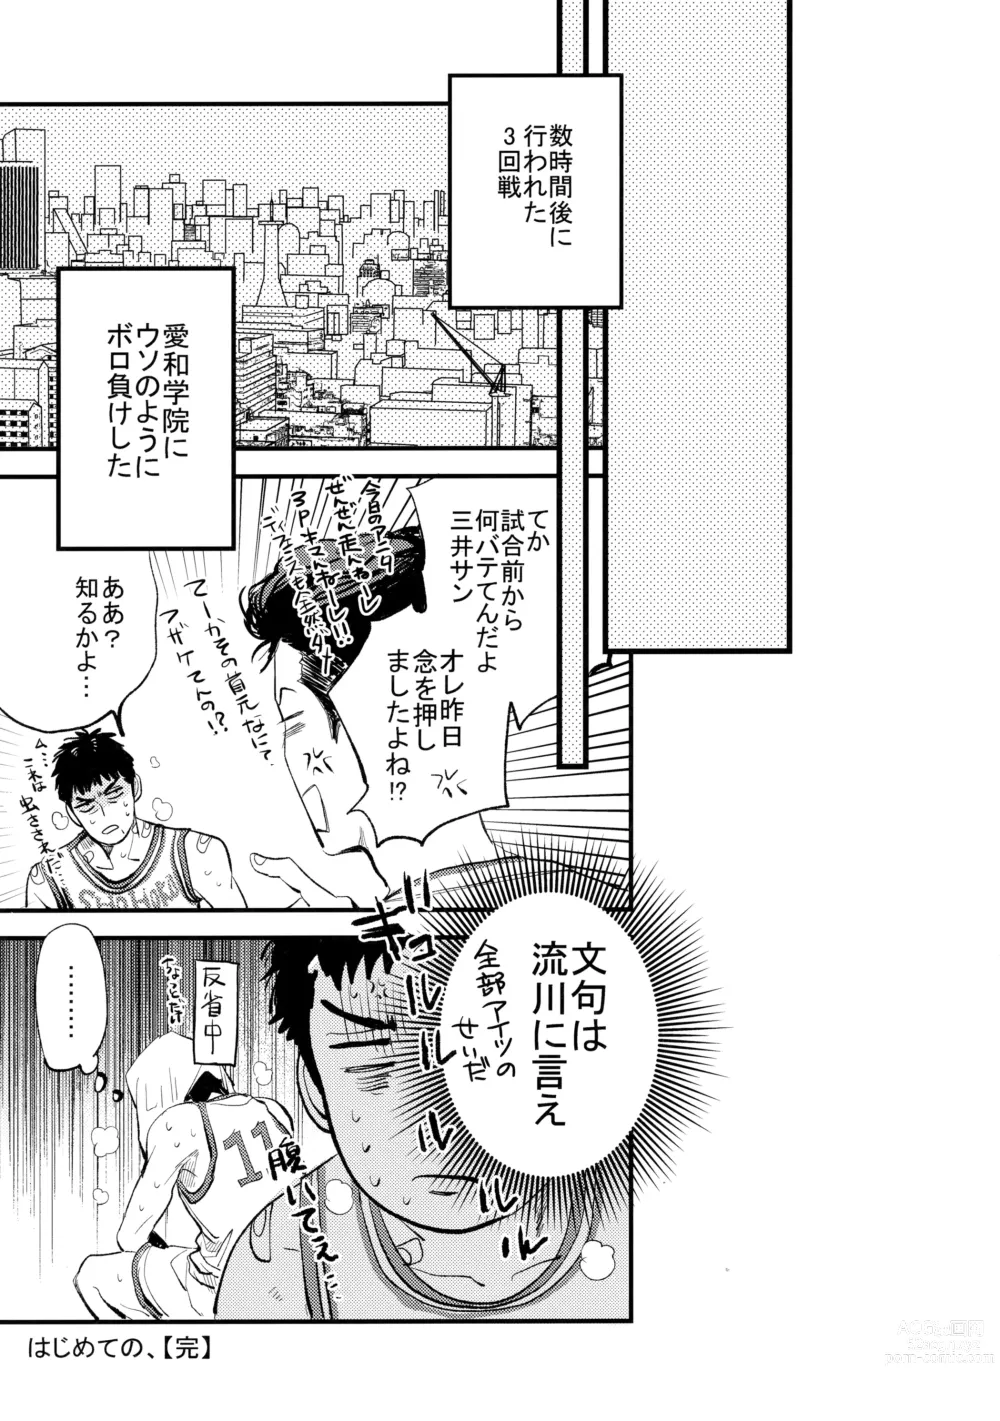 Page 70 of doujinshi Hajimete no,